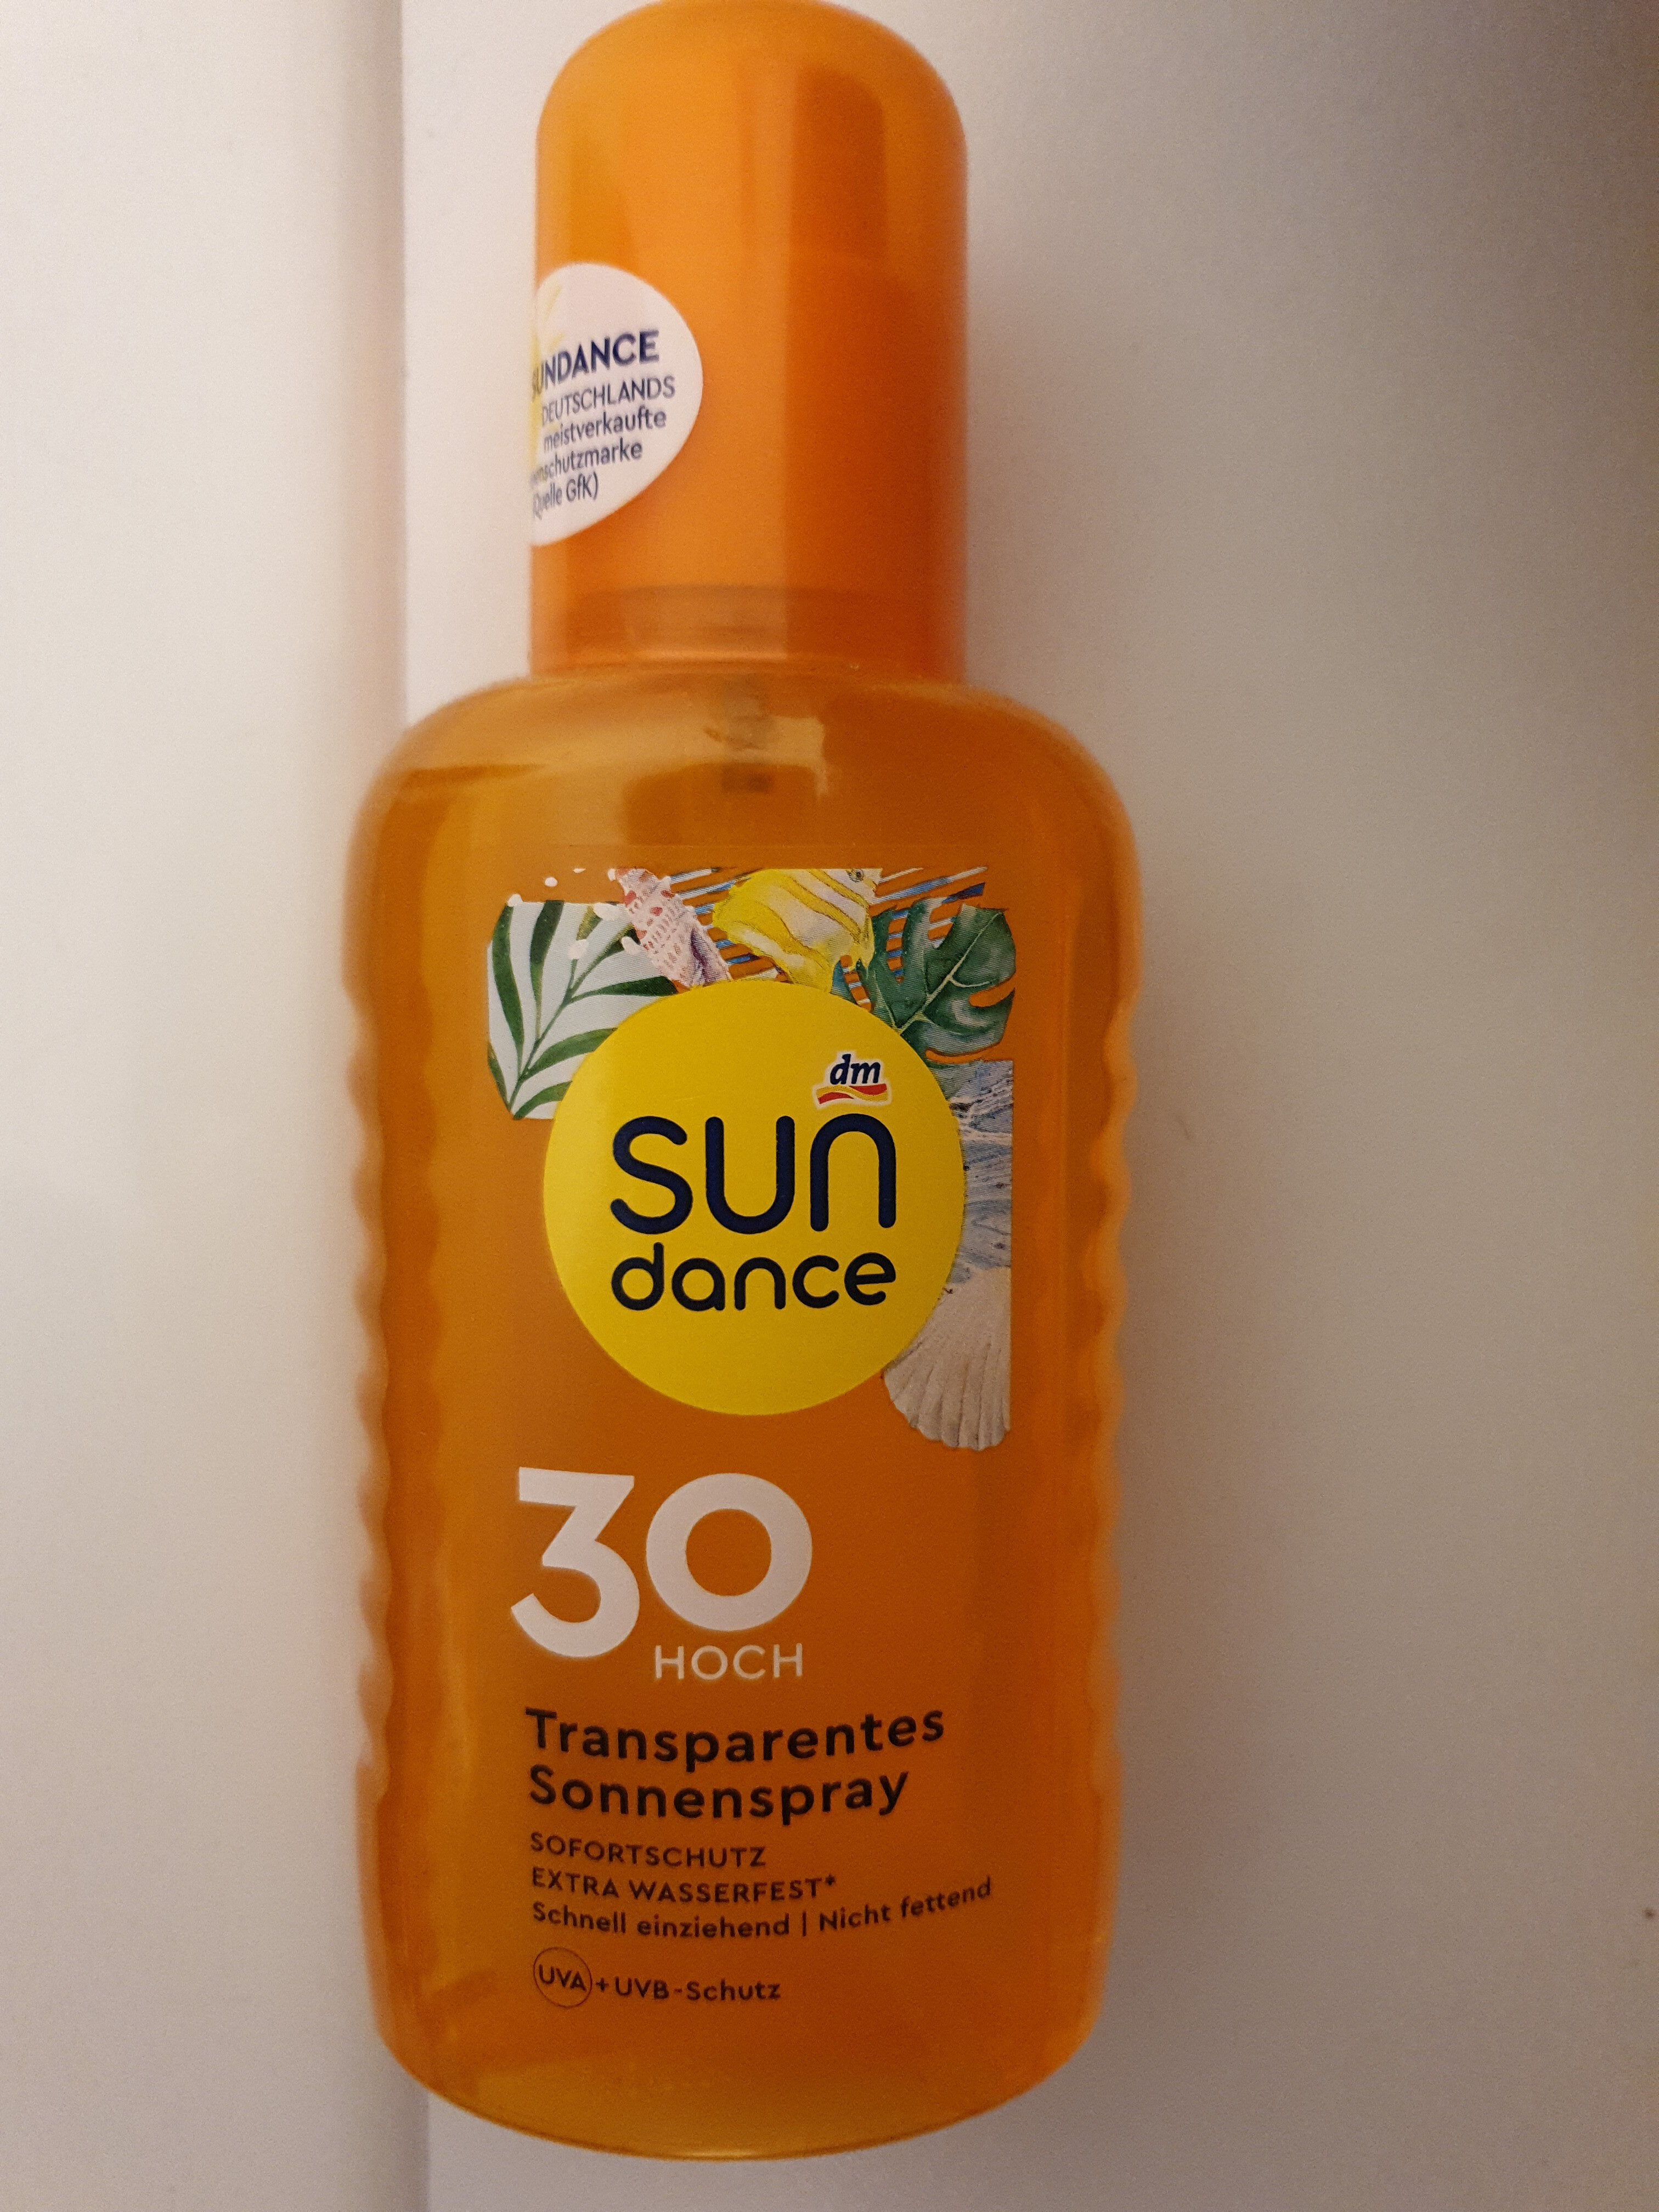 sun dance 30 transparentes sonnenspray - Tuote - de